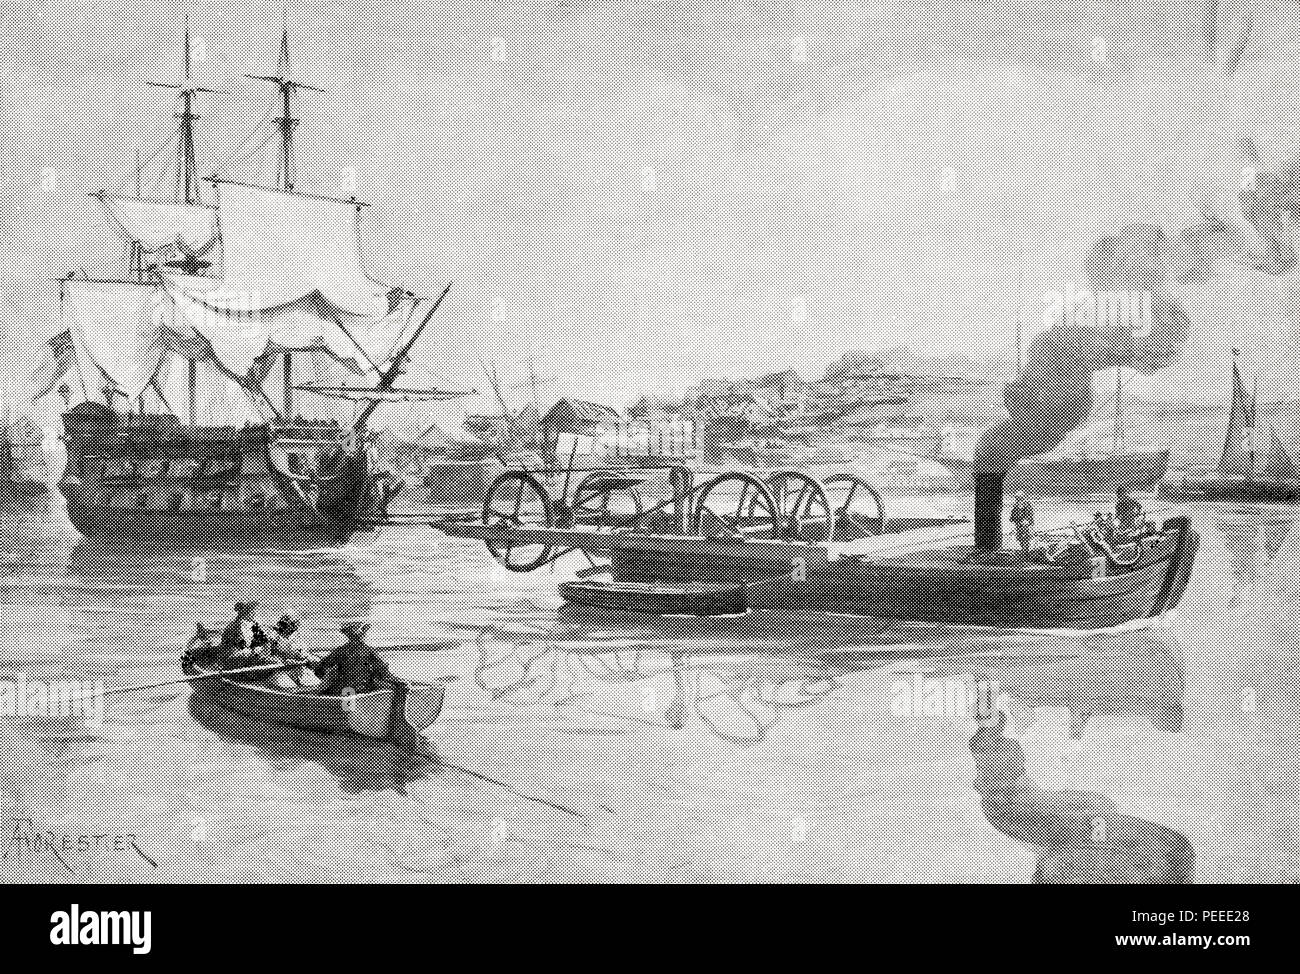 L'un des premiers bateaux à vapeur, Jonathan coques remorqueur à vapeur, 1737. Du livre de navires, publié vers 1920. Banque D'Images